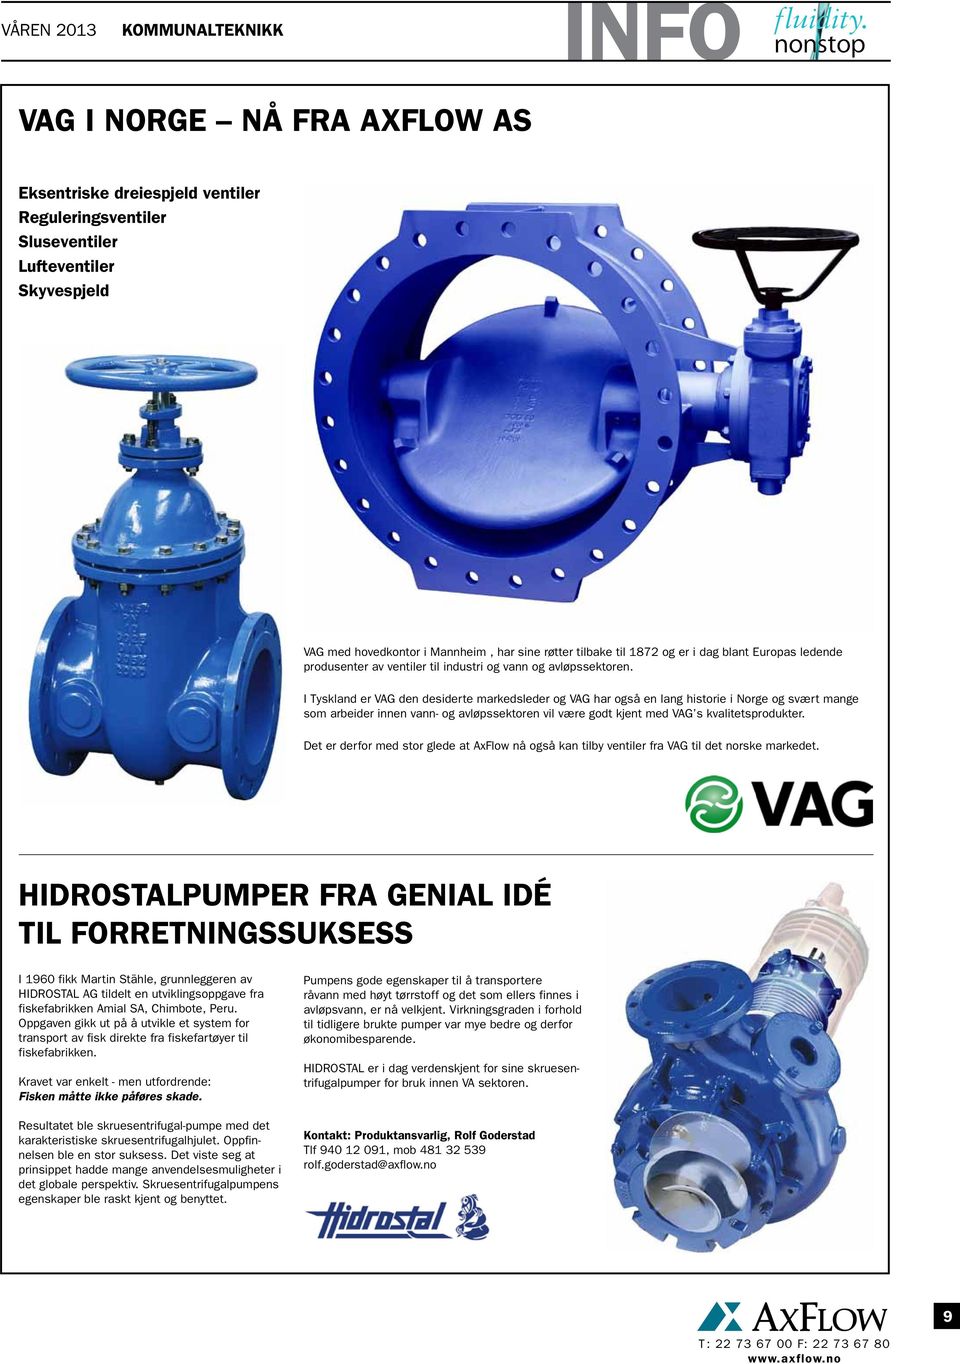 I Tyskland er VAG den desiderte markedsleder og VAG har også en lang historie i Norge og svært mange som arbeider innen vann- og avløpssektoren vil være godt kjent med VAG s kvalitetsprodukter.